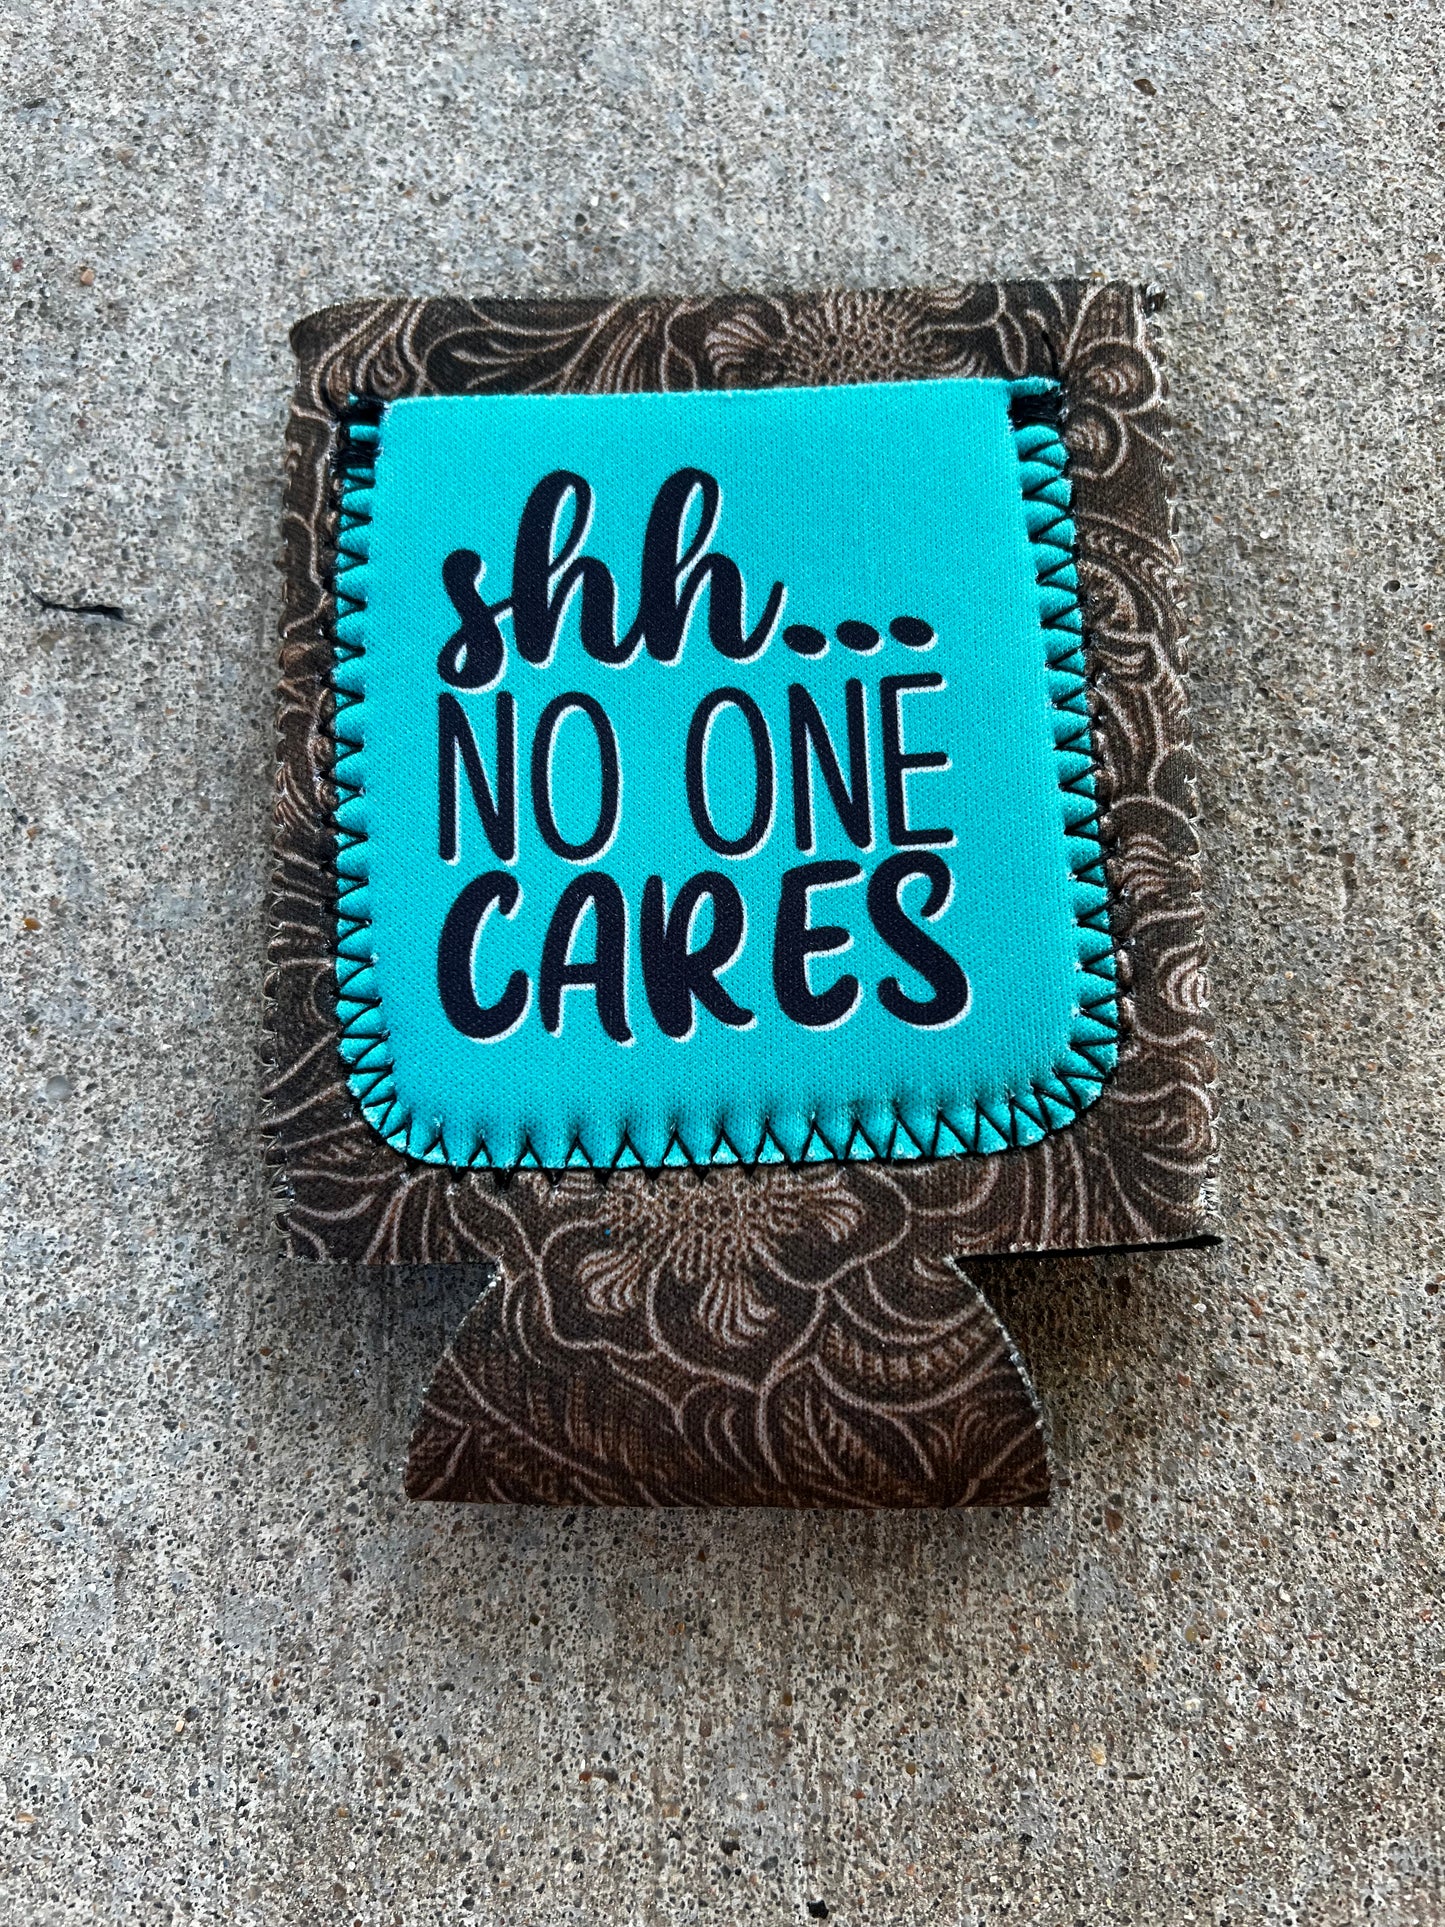 Shh… No One Cares